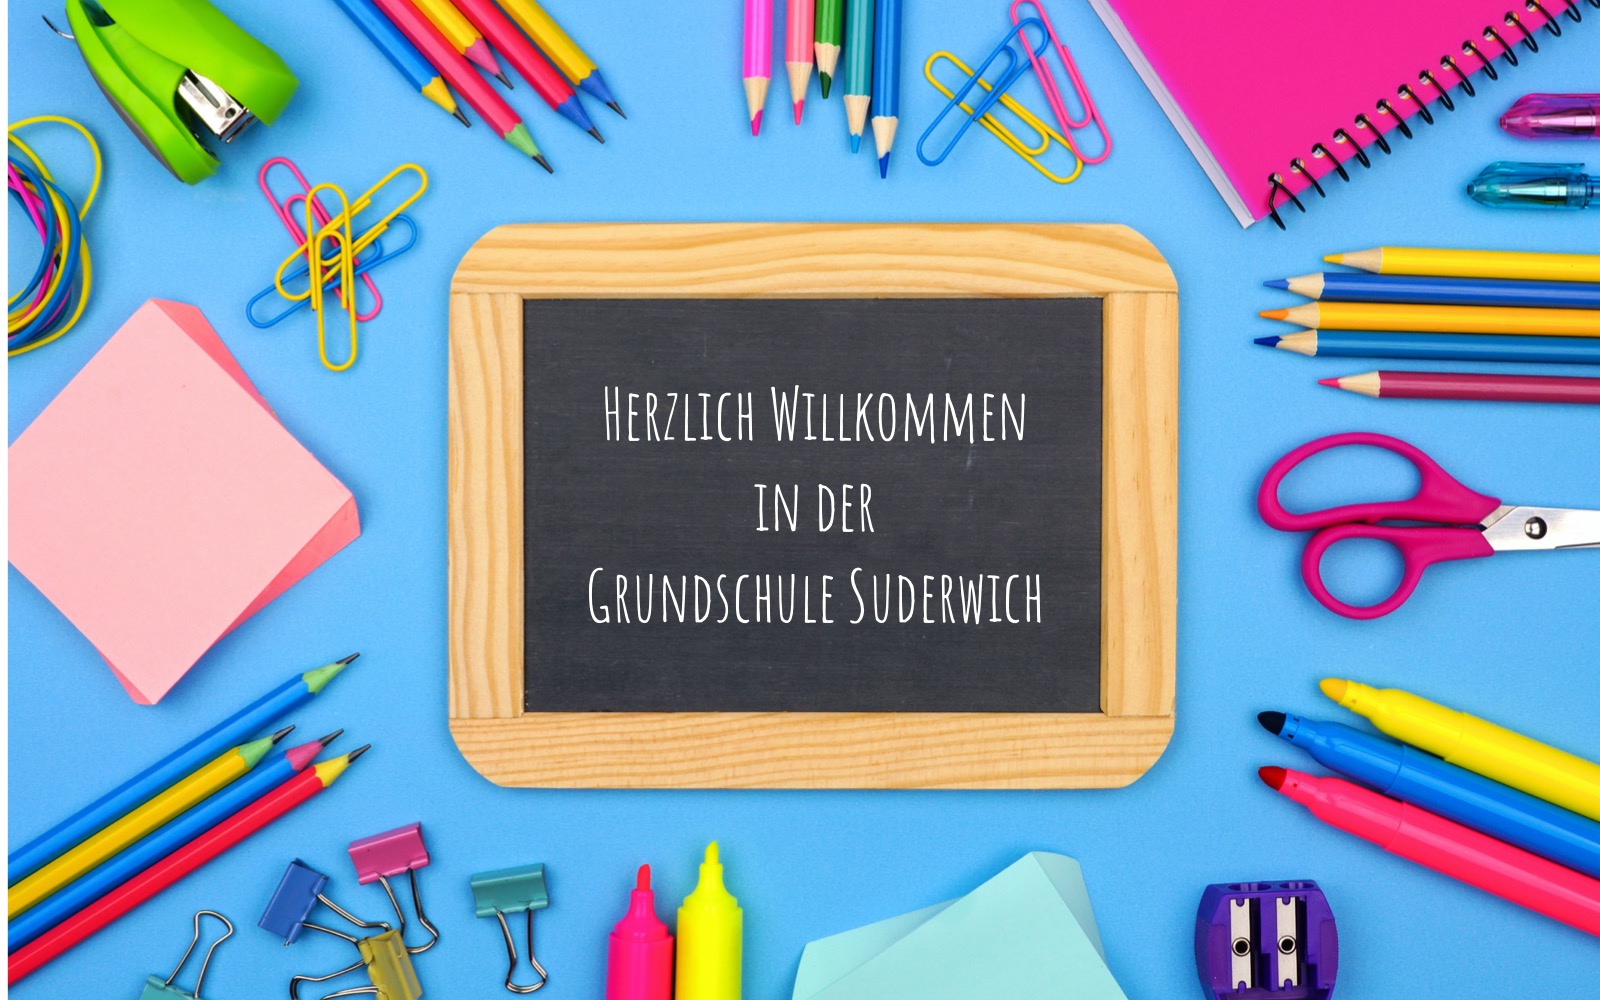 (c) Grundschule-suderwich.de